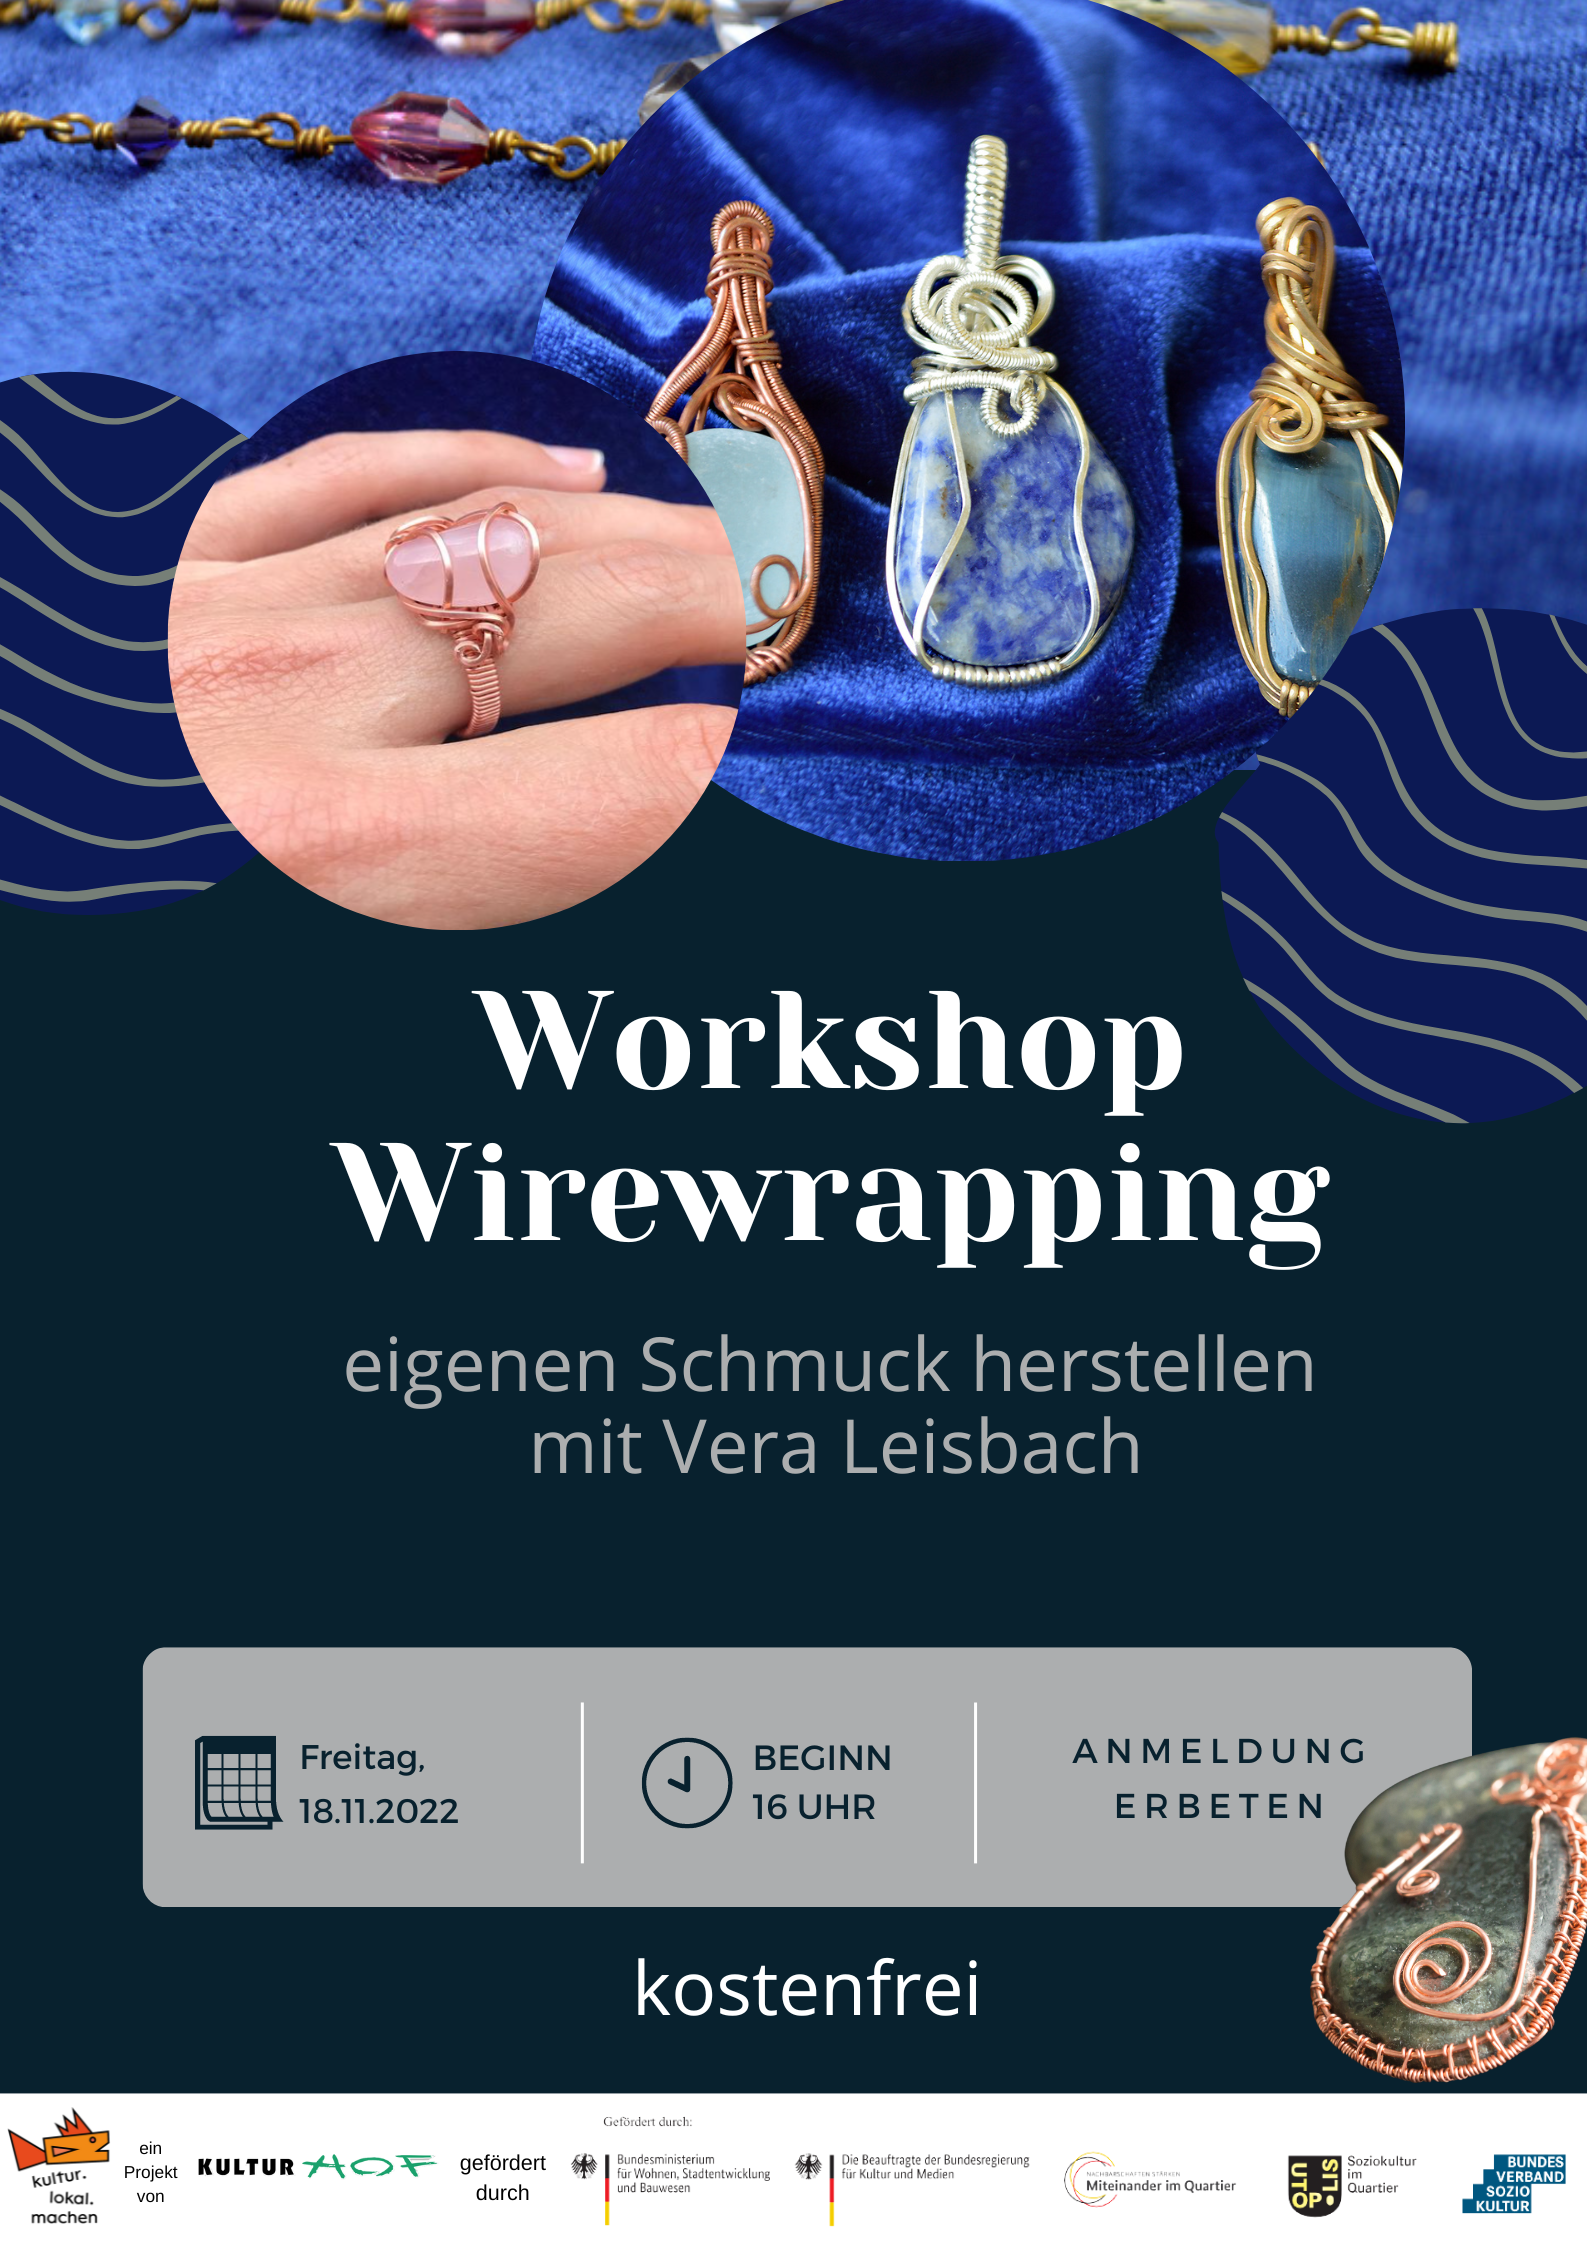 Wirewrapping (Schmuckherstellung)